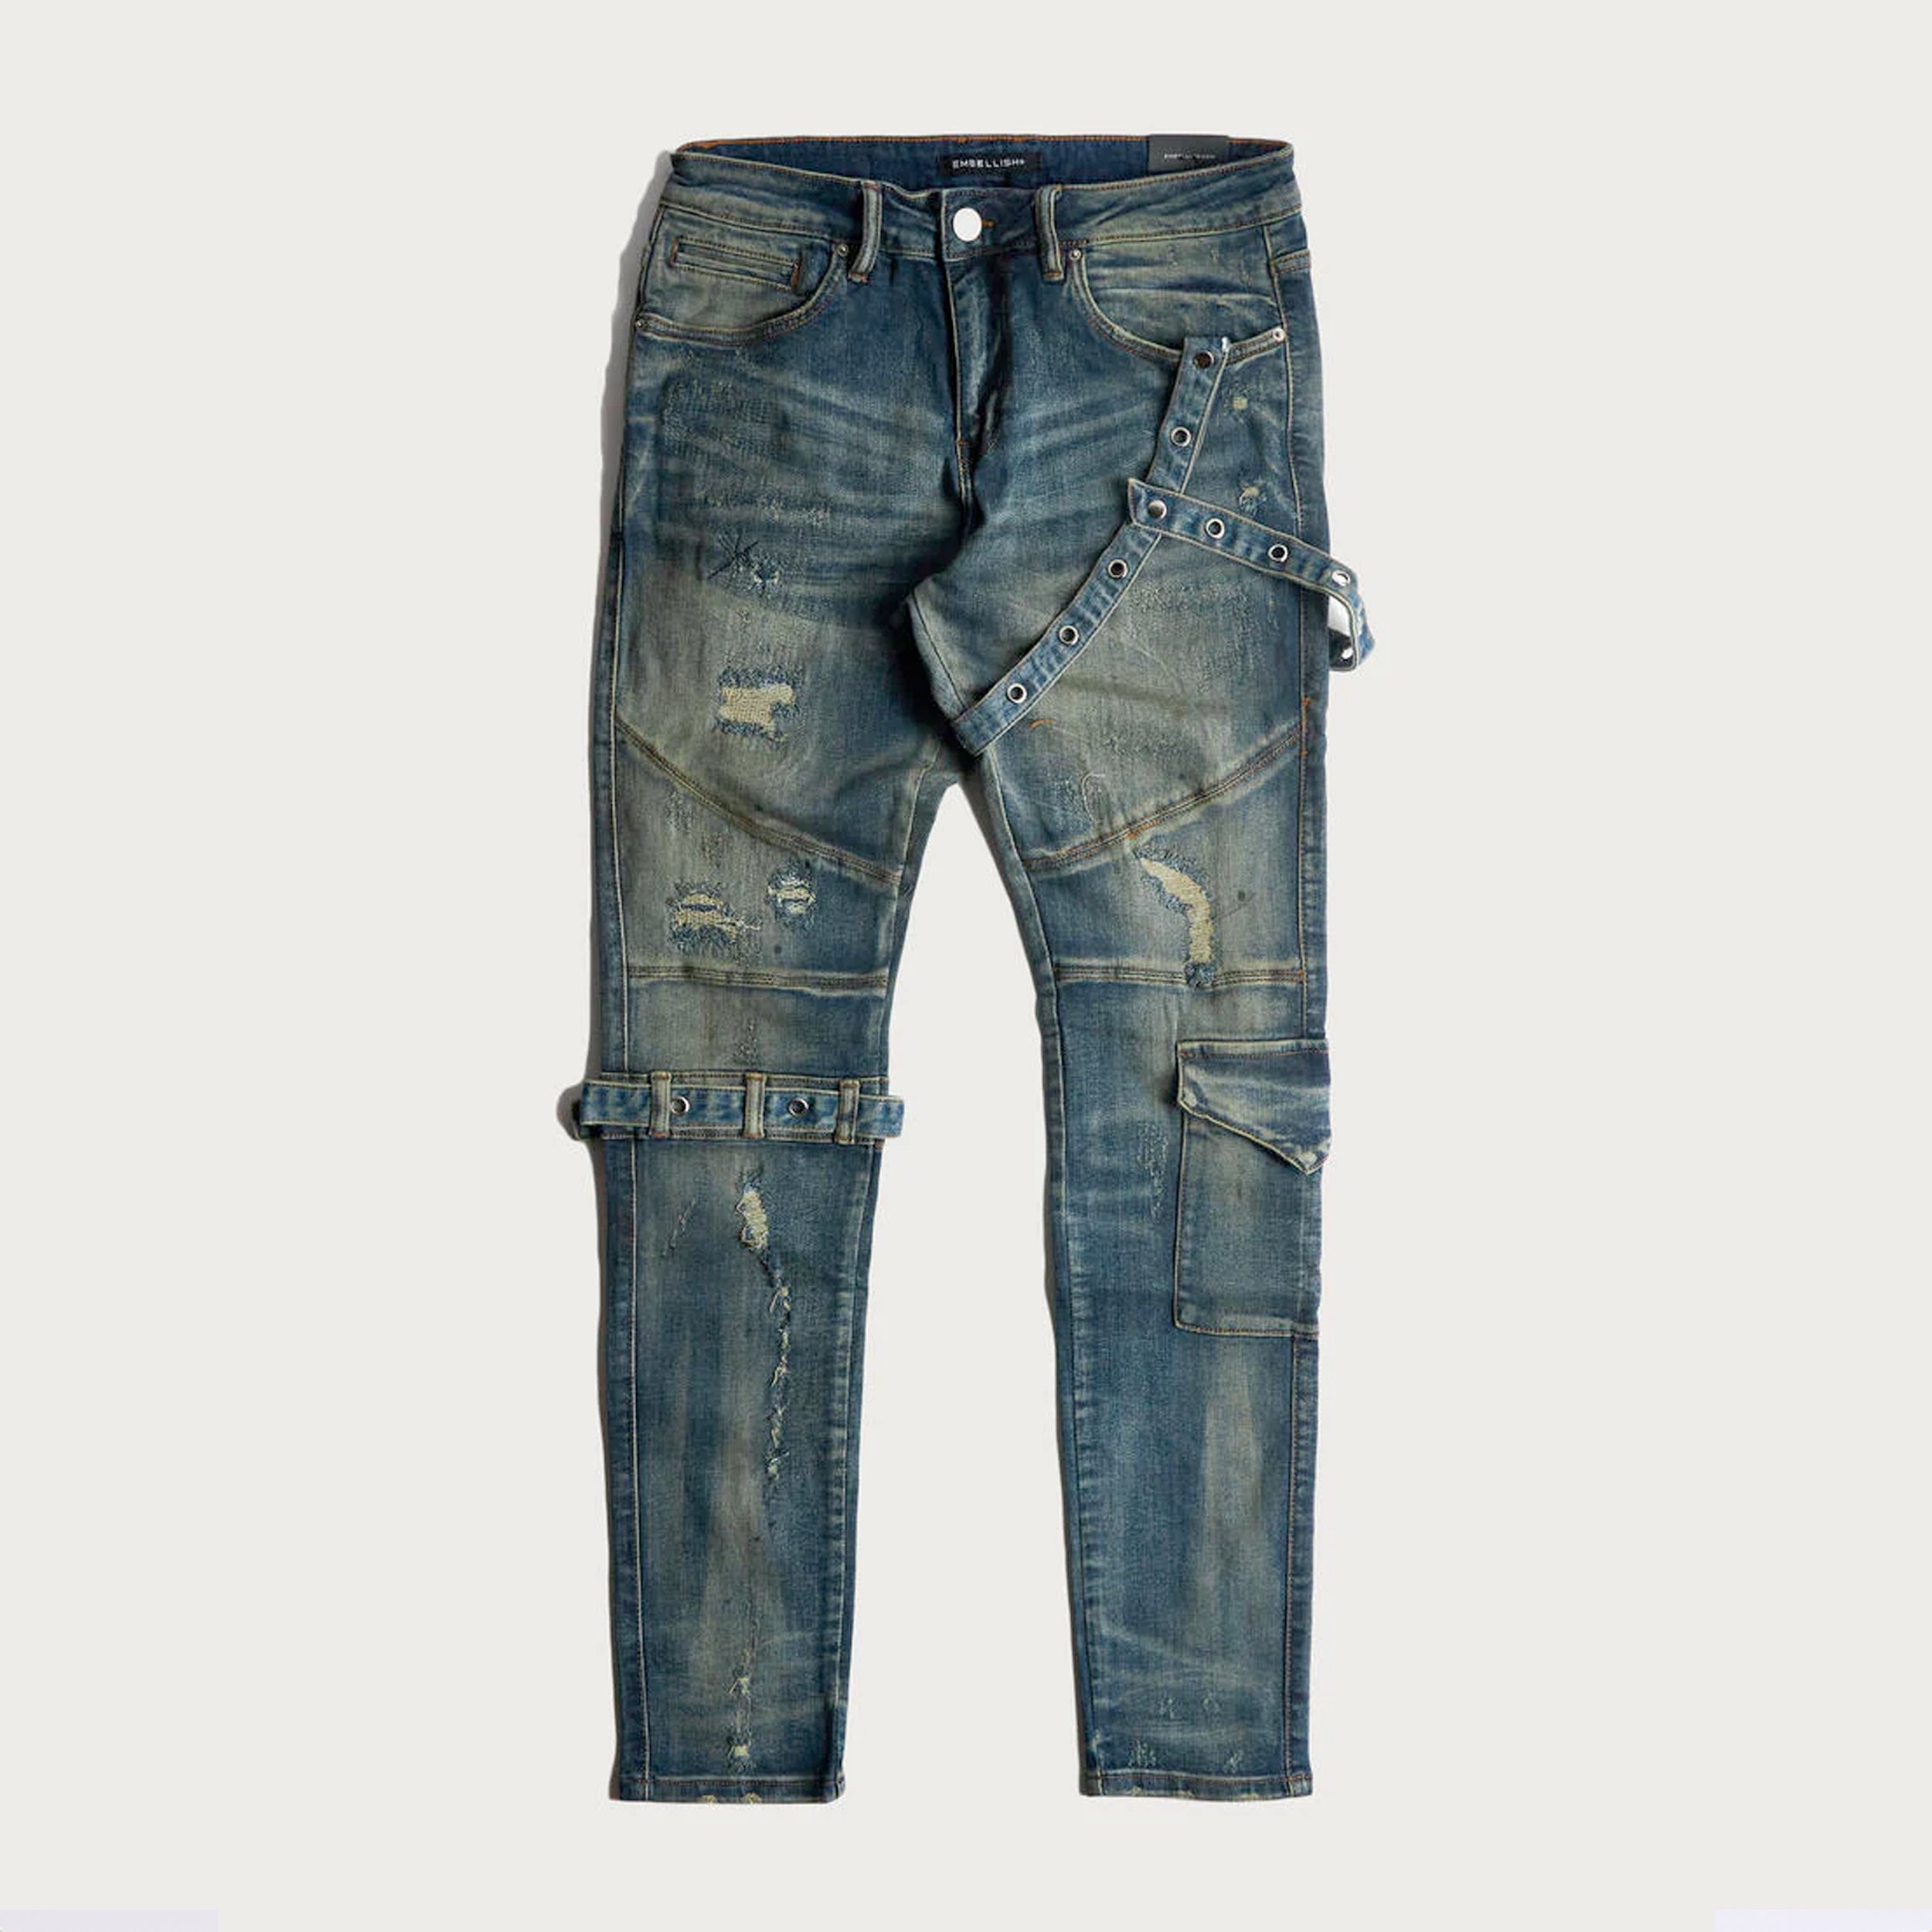 Wholesale Embellish Indigo Jeans for Sale - EMBSP122-107